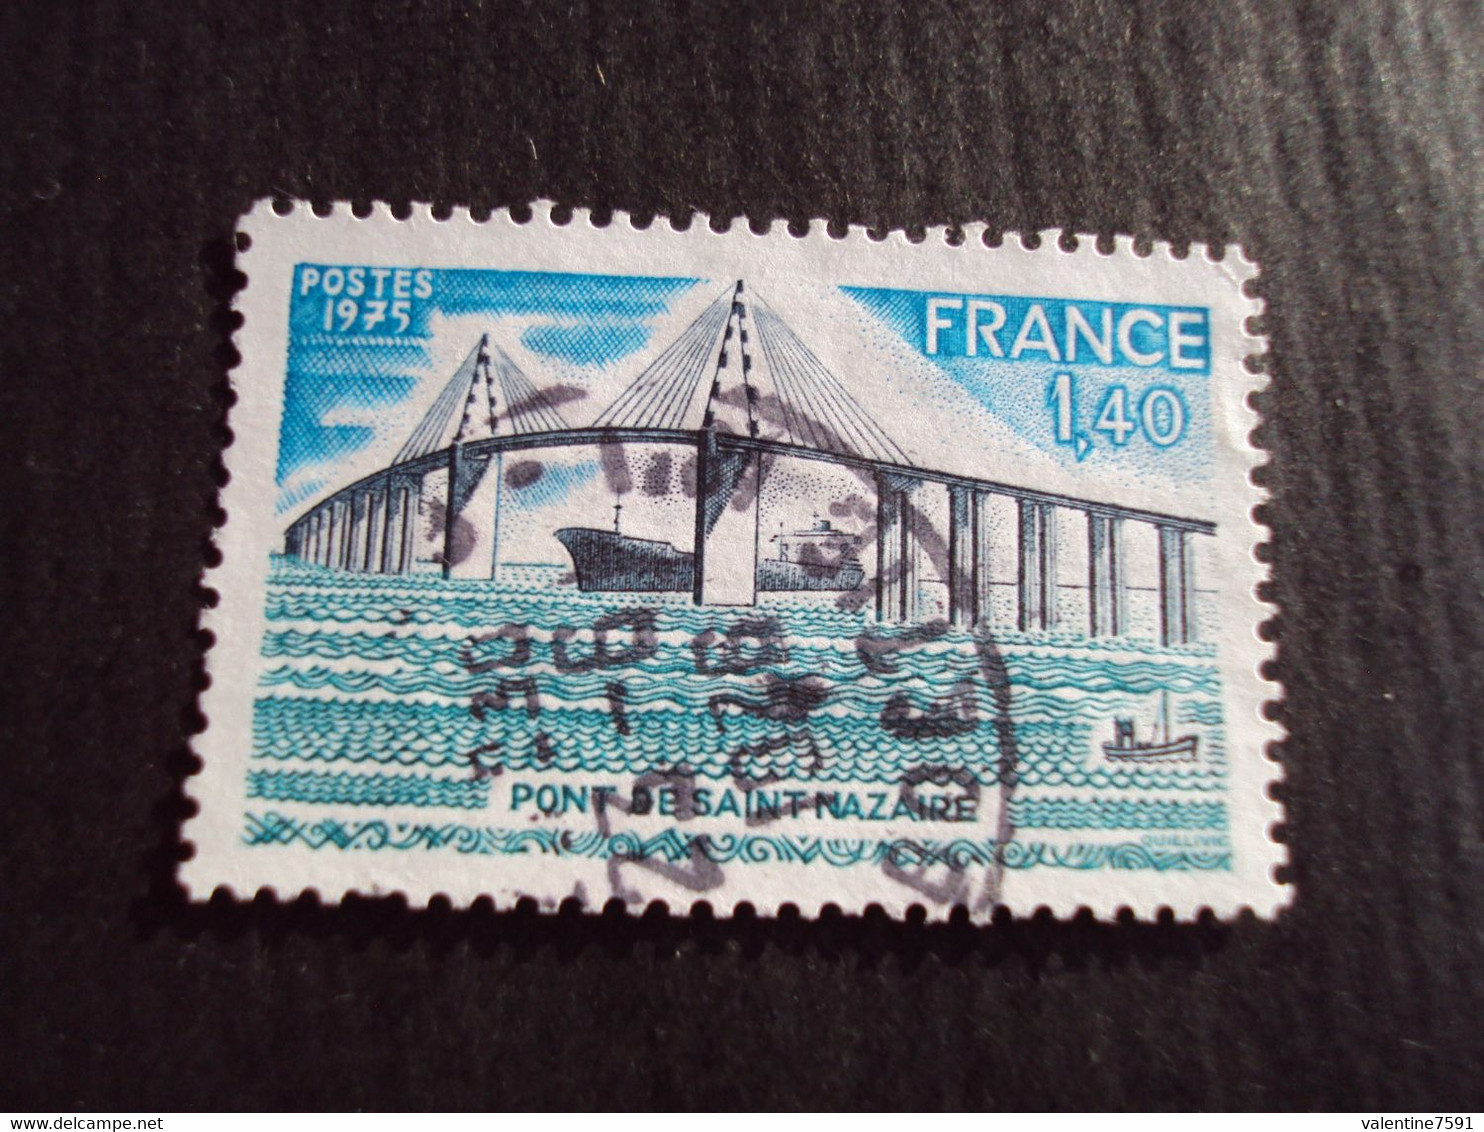 1970-79 - Oblitéré N°  1856   "    Pont St Nazaire   "   "   Paris, Rue  Boetie"    Net 0.40  Photo   2 - Oblitérés